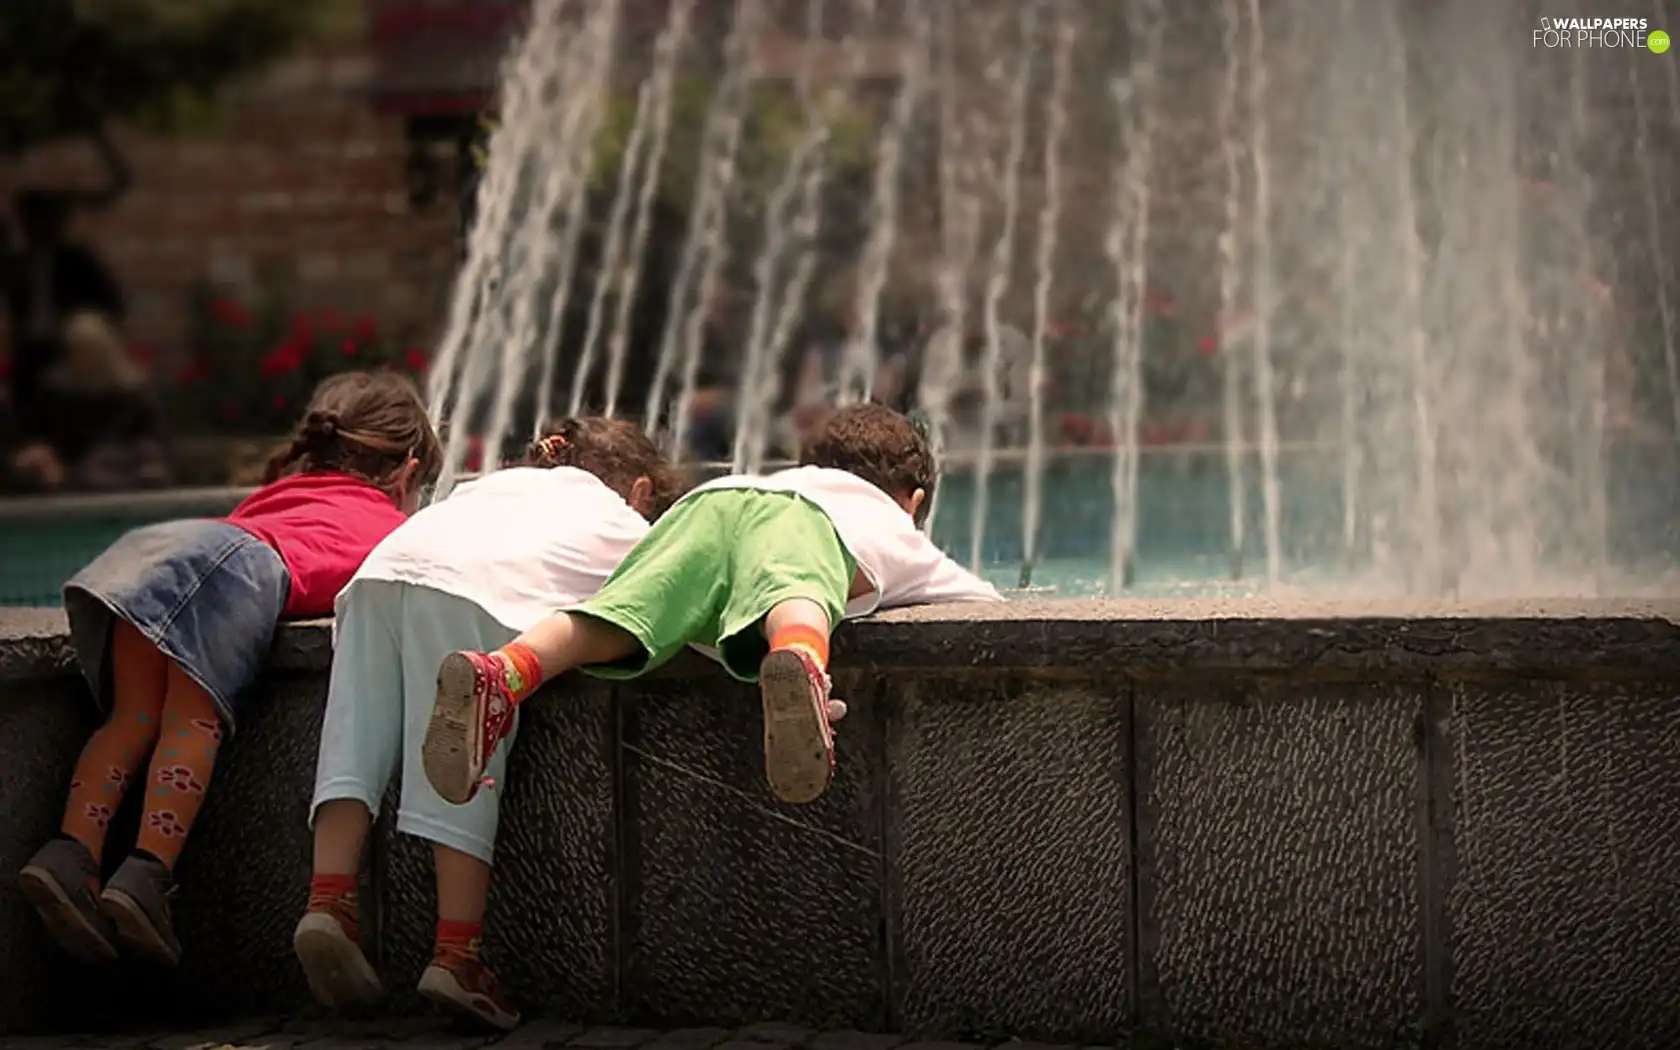 Town, Kids, fountain